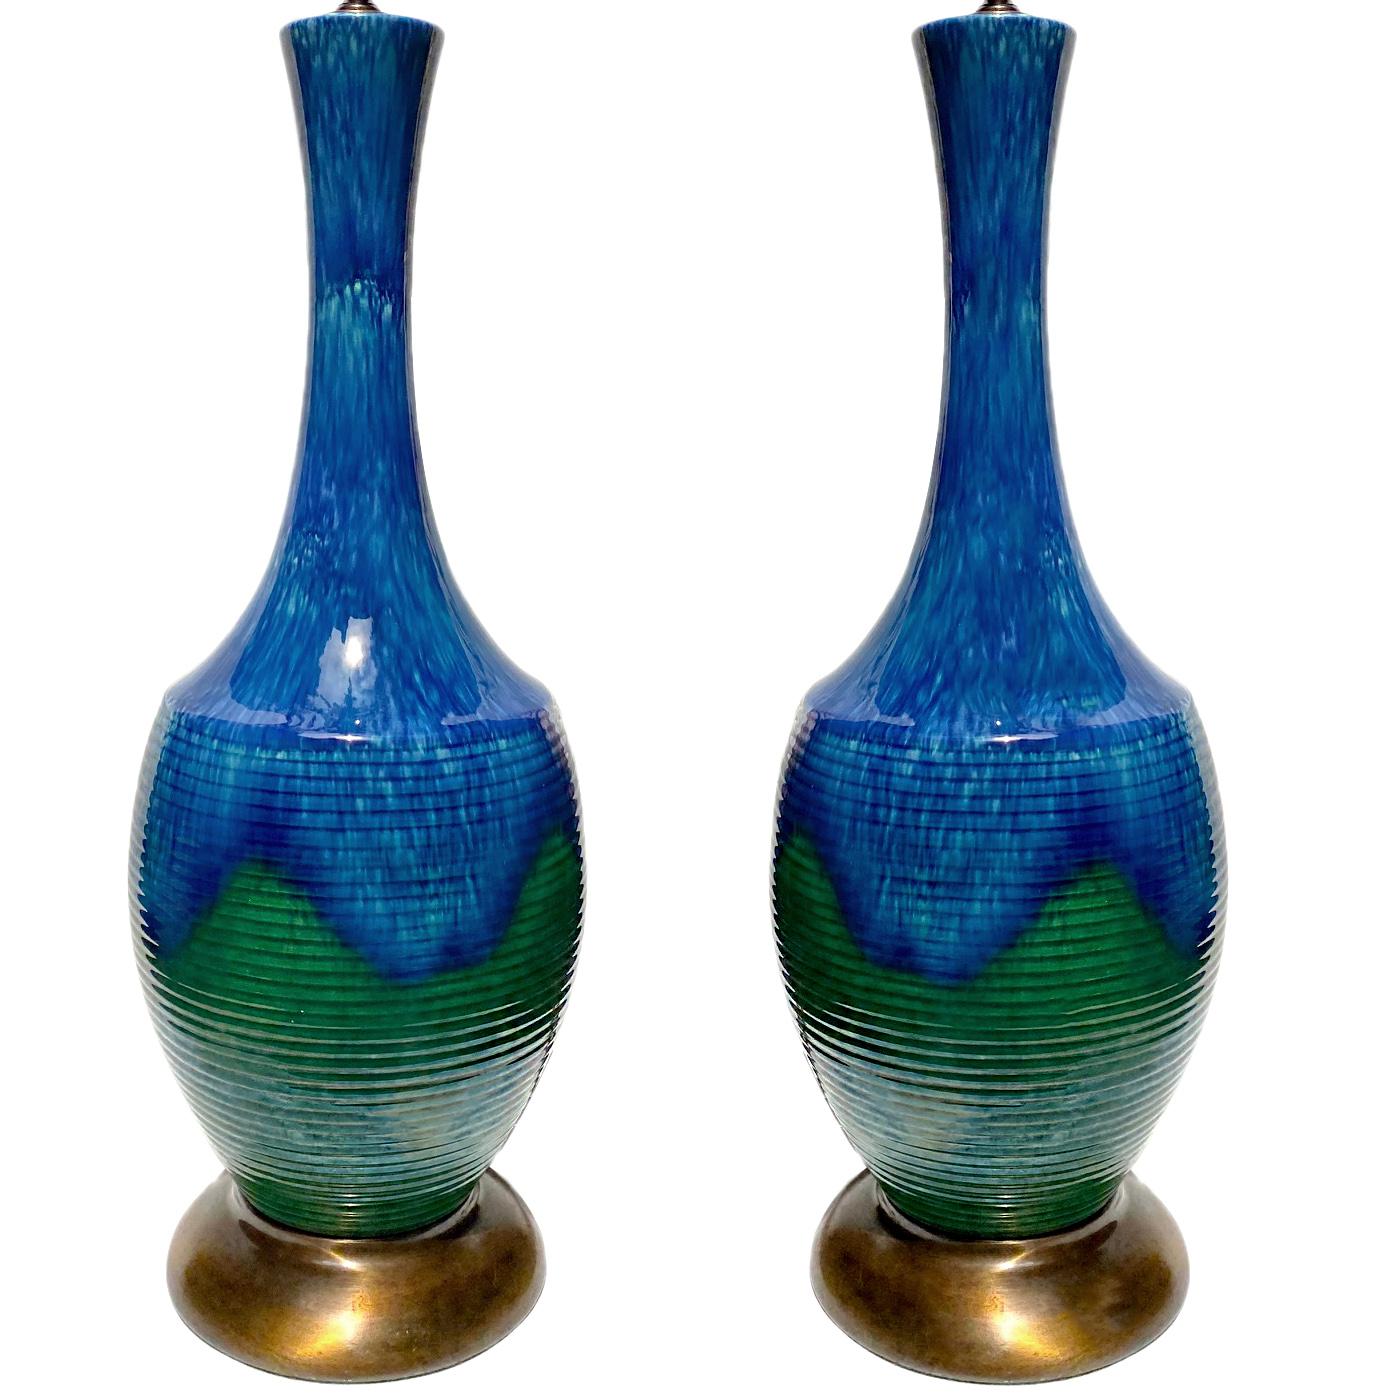 Zwei italienische Tischlampen aus zweifarbig glasiertem Porzellan mit blauen und grünen Farbtönen aus den 1950er Jahren.

Abmessungen:
Höhe des Körpers: 24,5